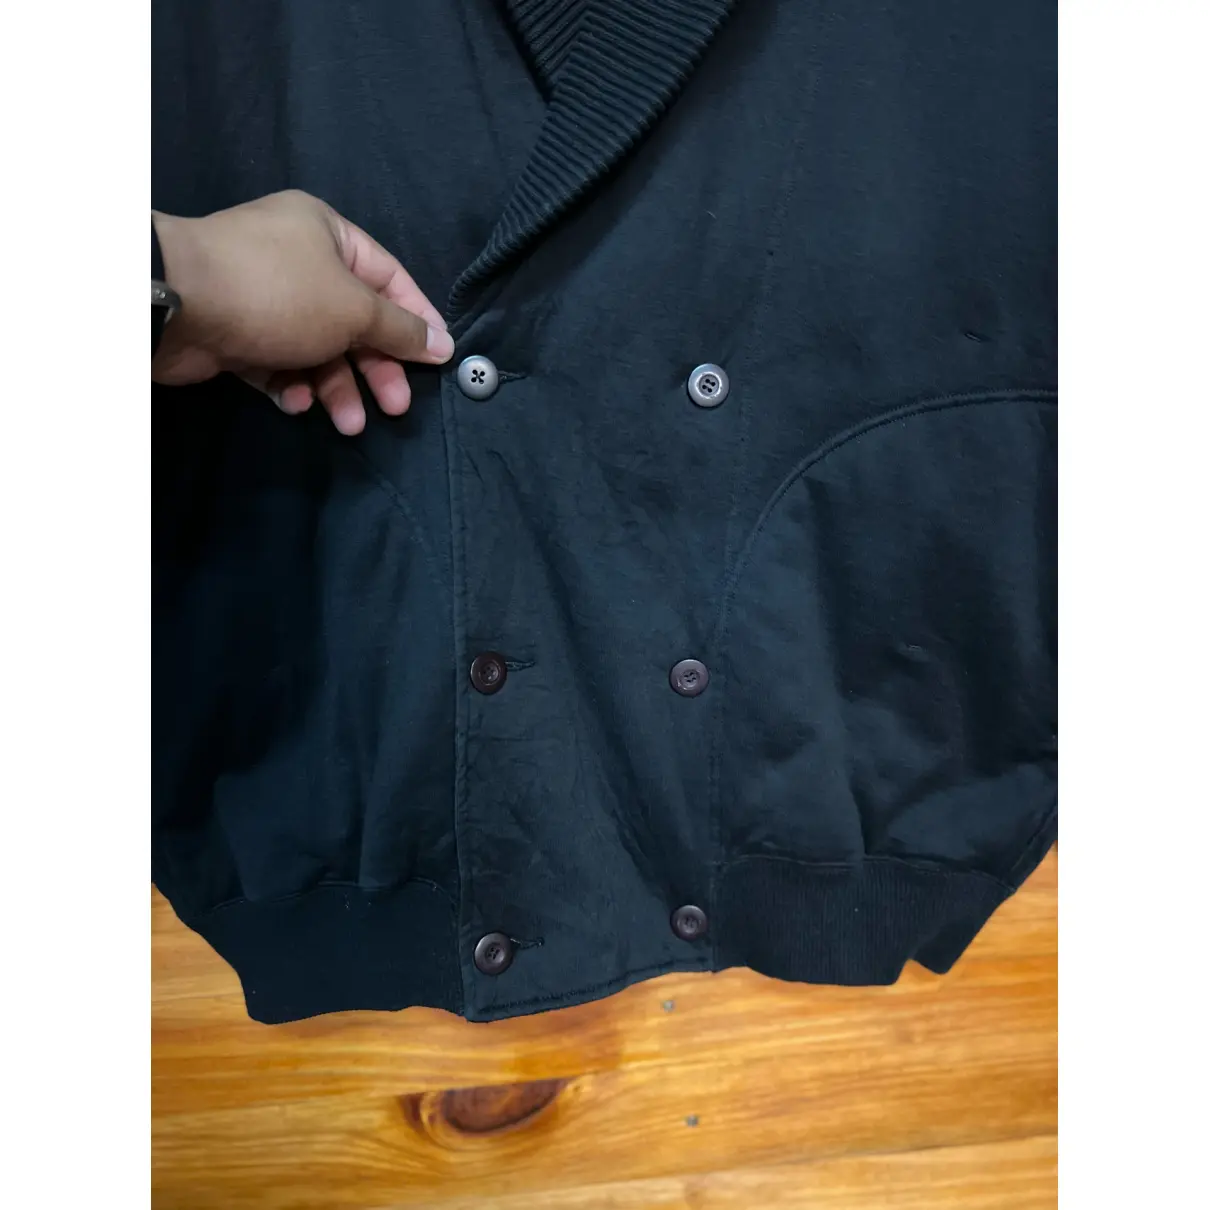 Jacket Issey Miyake - Vintage